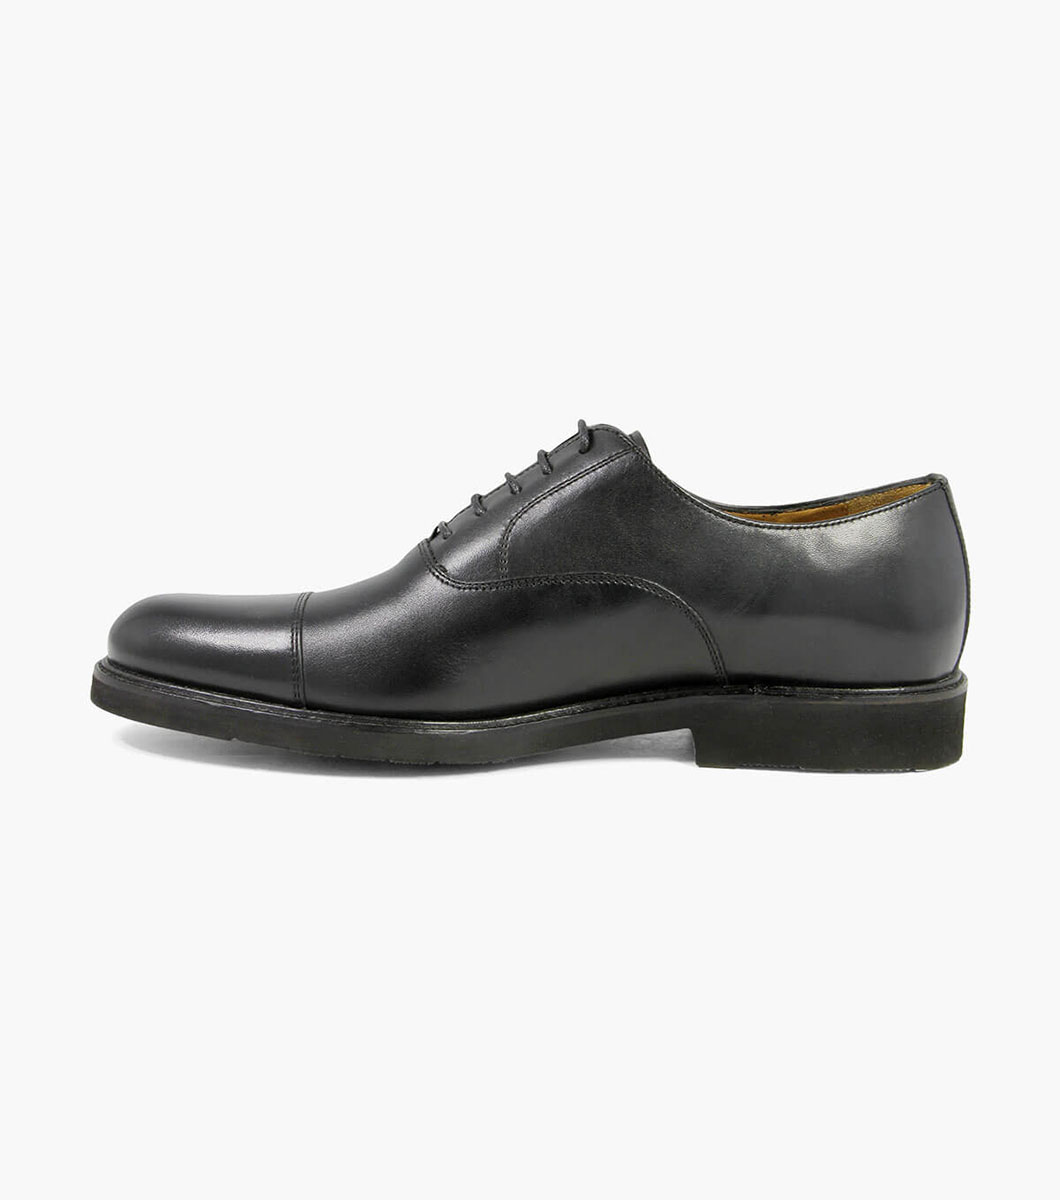 Gallo Cap Toe Oxford Men’s Dress Shoes | Florsheimshoes.ca